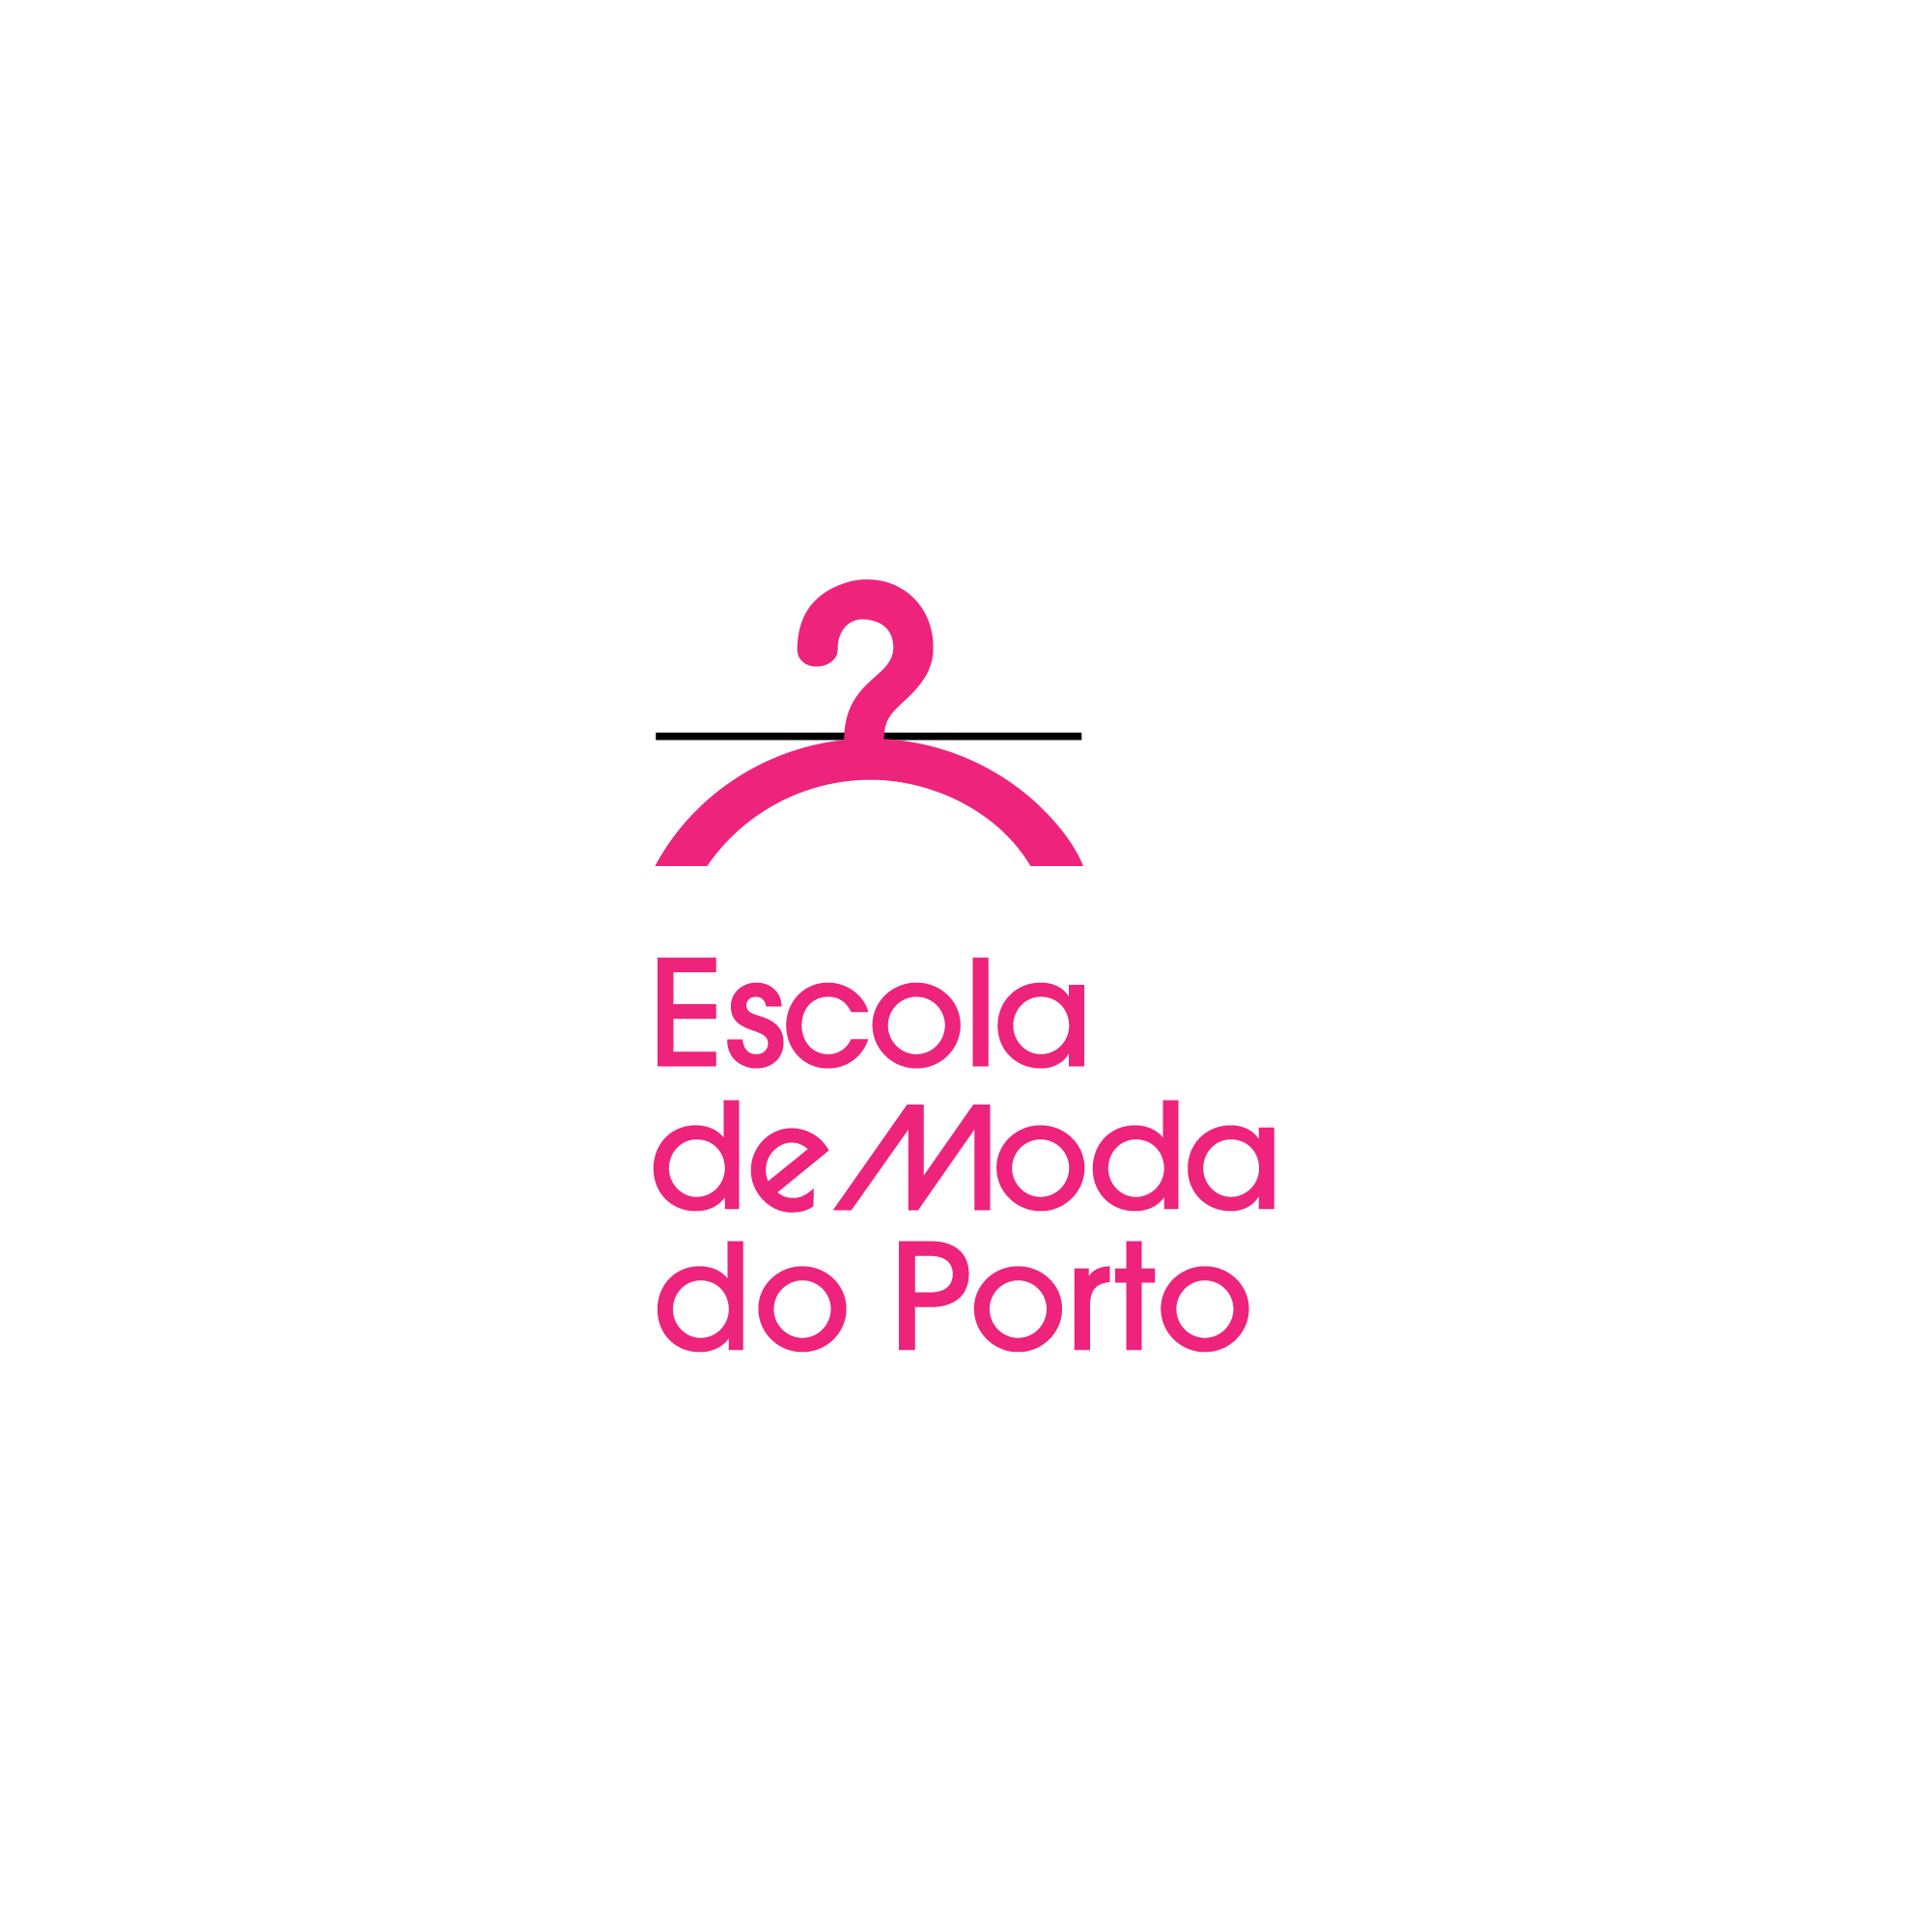 ESCOLA DE MODA PORTO - letter/positivo (2011)